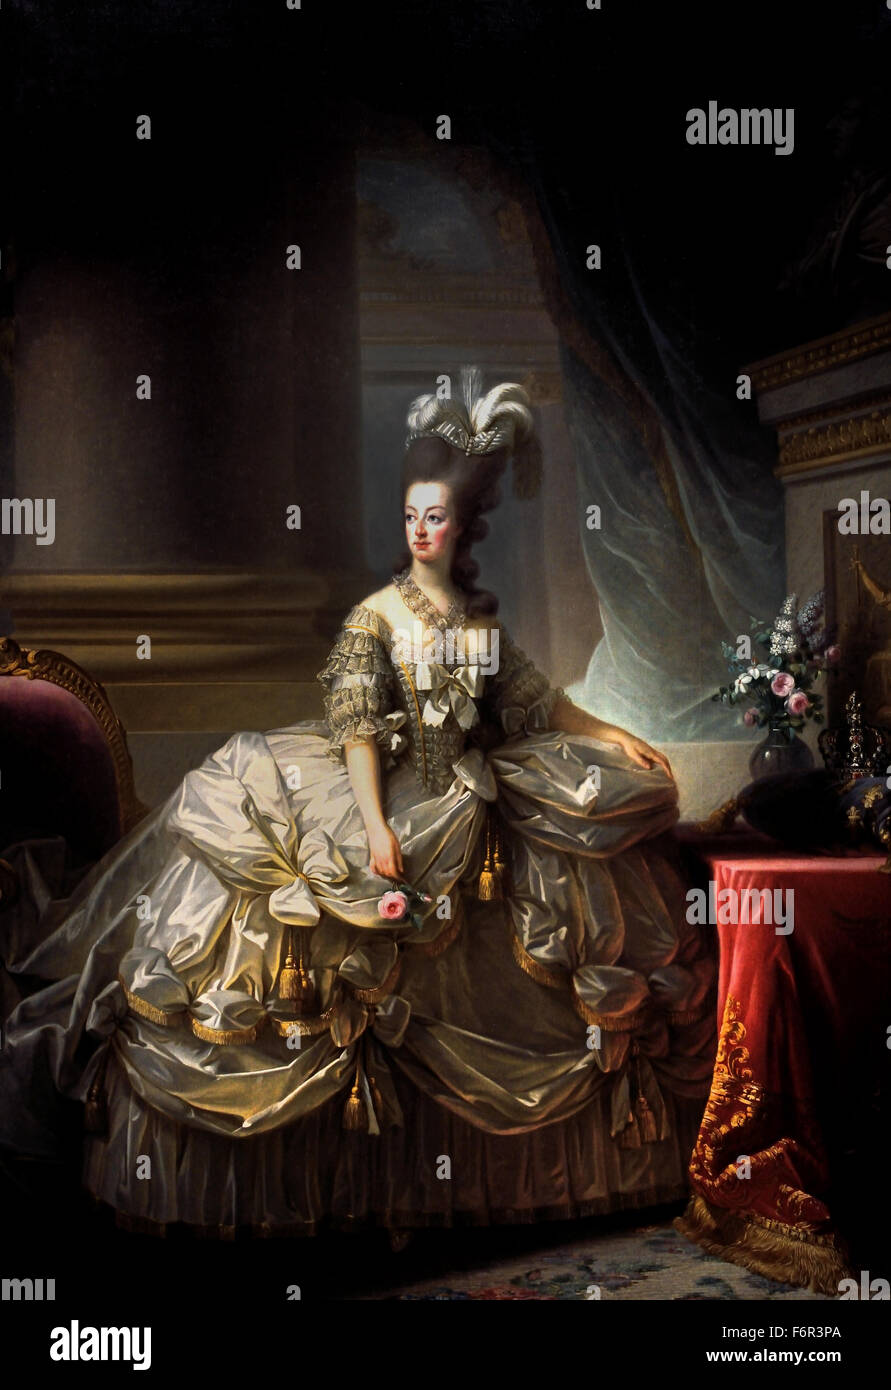 Erzherzogin Marie Antoinette, Königin von Frankreich (1755-1793) Frau von König Louis XVI 1778 Marie Élisabeth Louise Vigée Le Brun 1755 –1842 Paris Französisch Frankreich (Rokoko klassizistischen Maler) Stockfoto